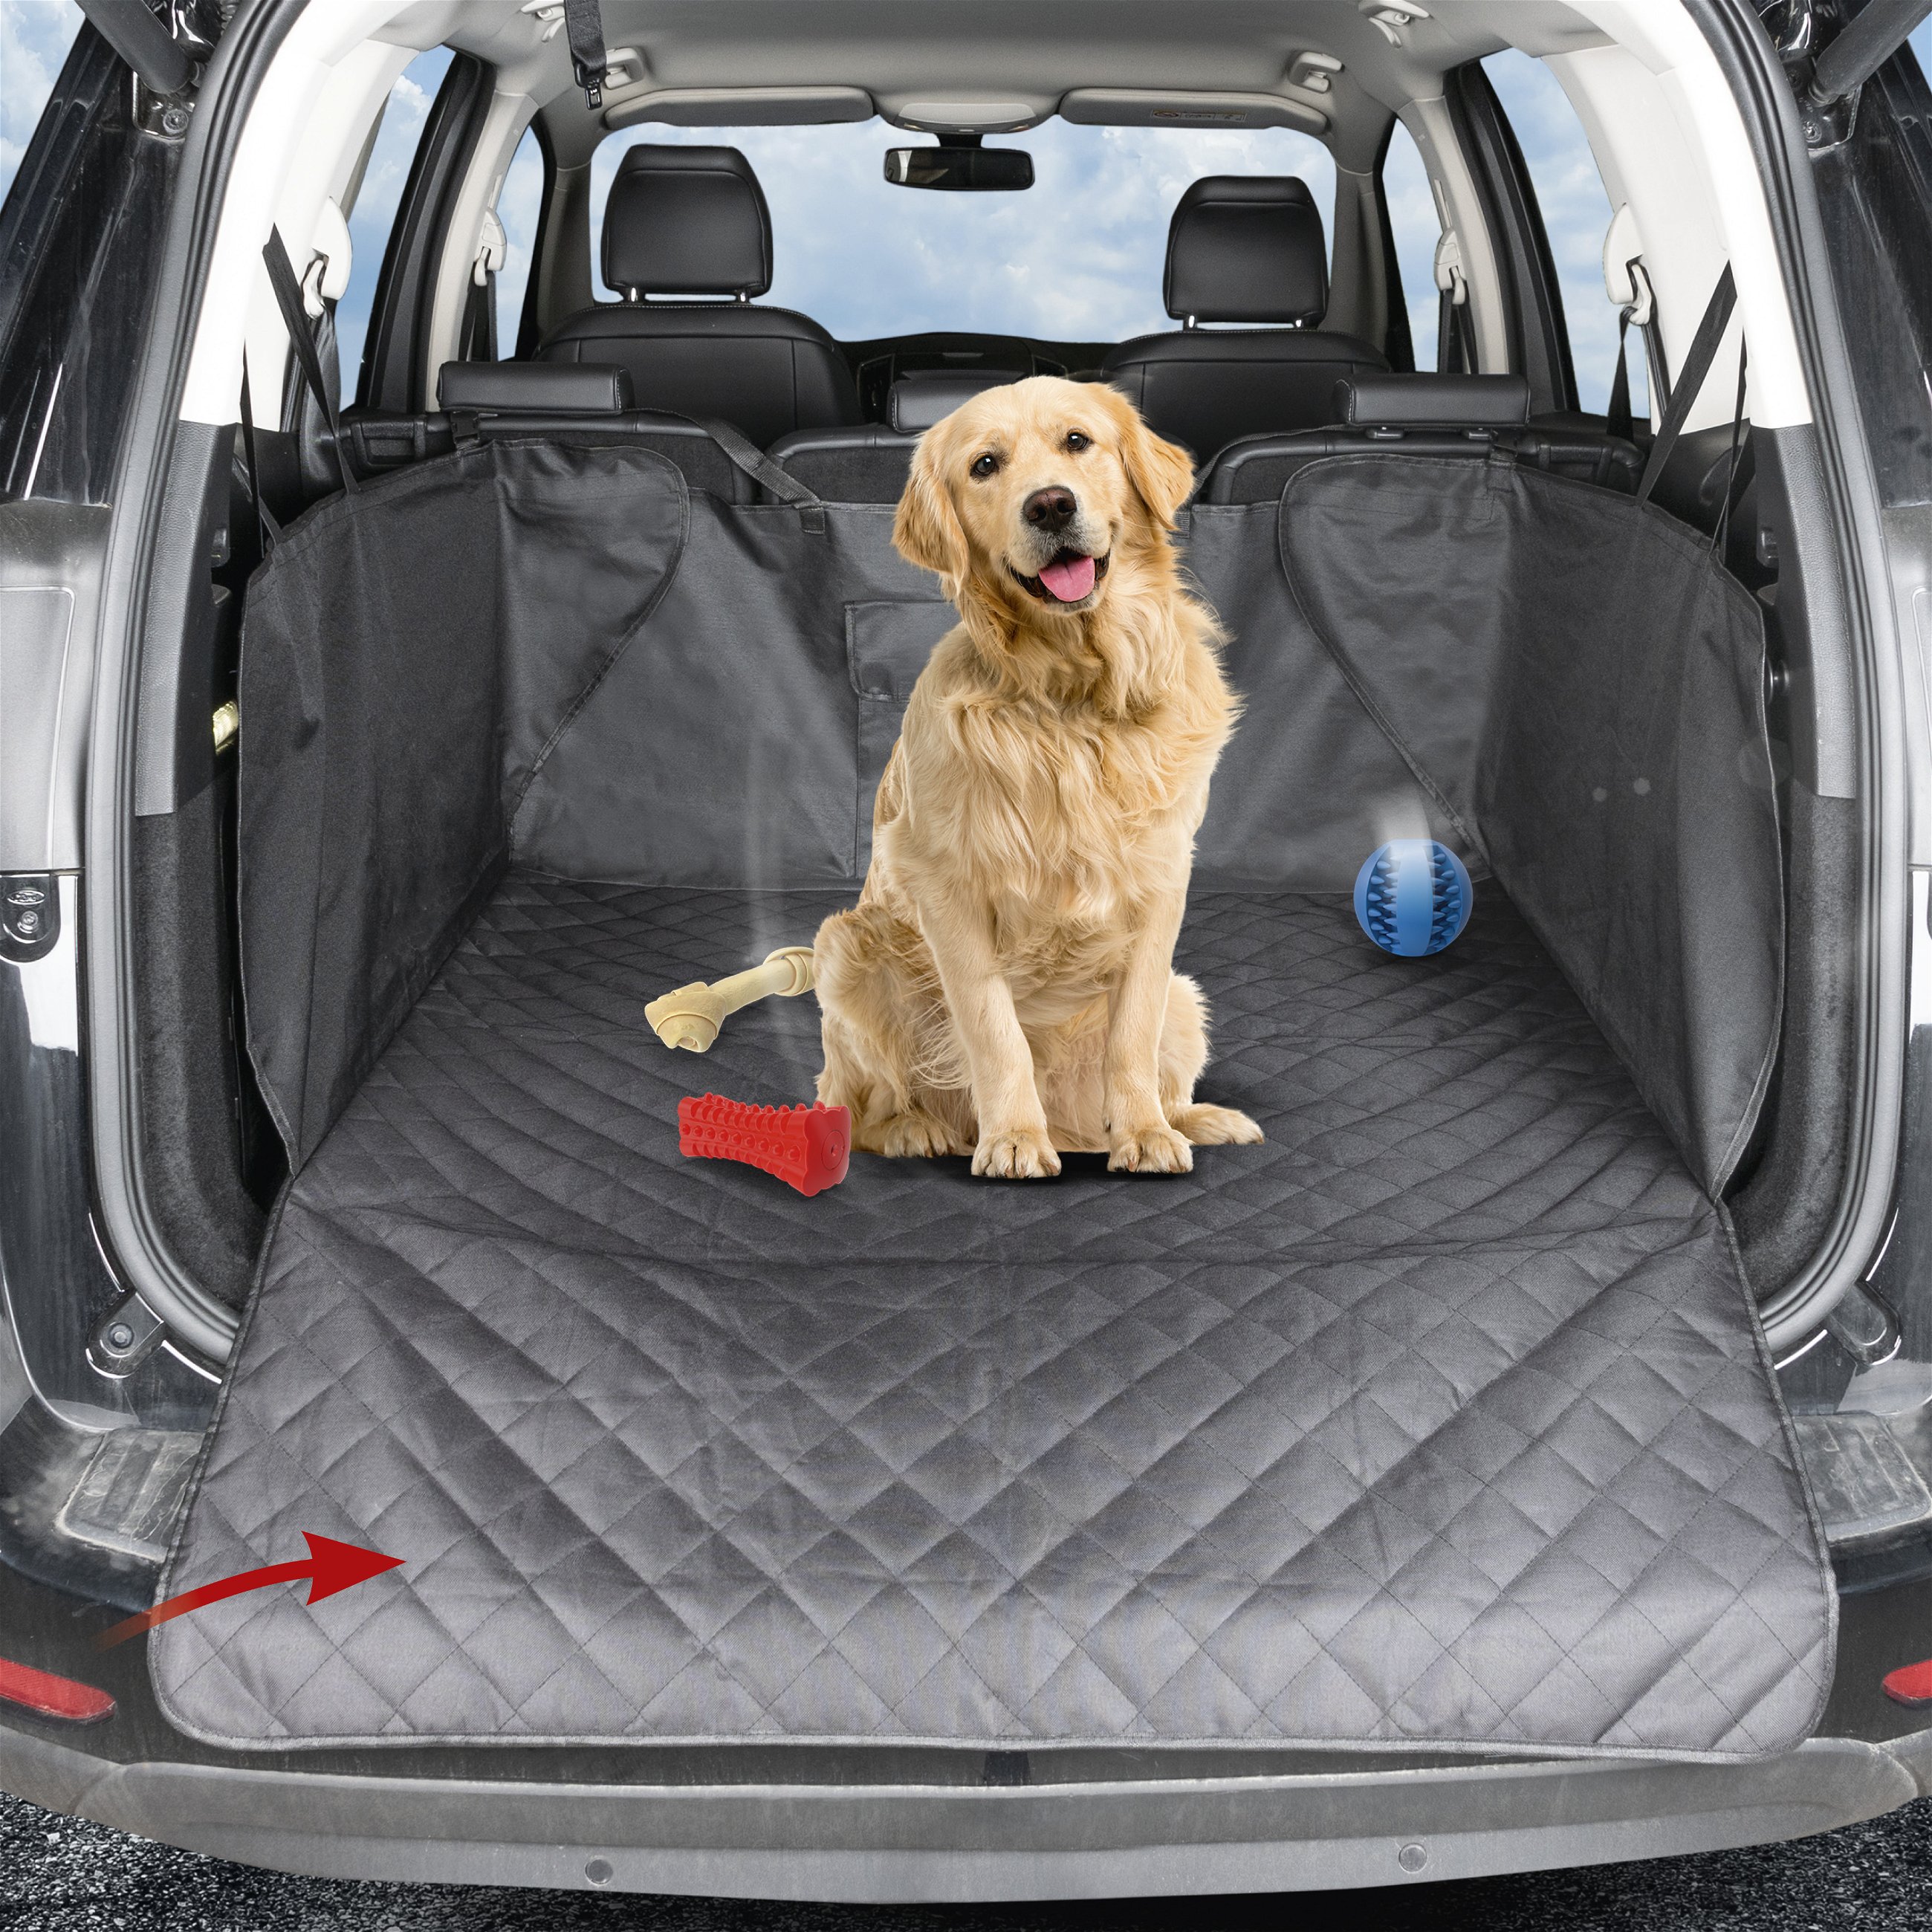 LovPet® 2in1 Hundedecke für Auto Rückbank & Kofferraum mit